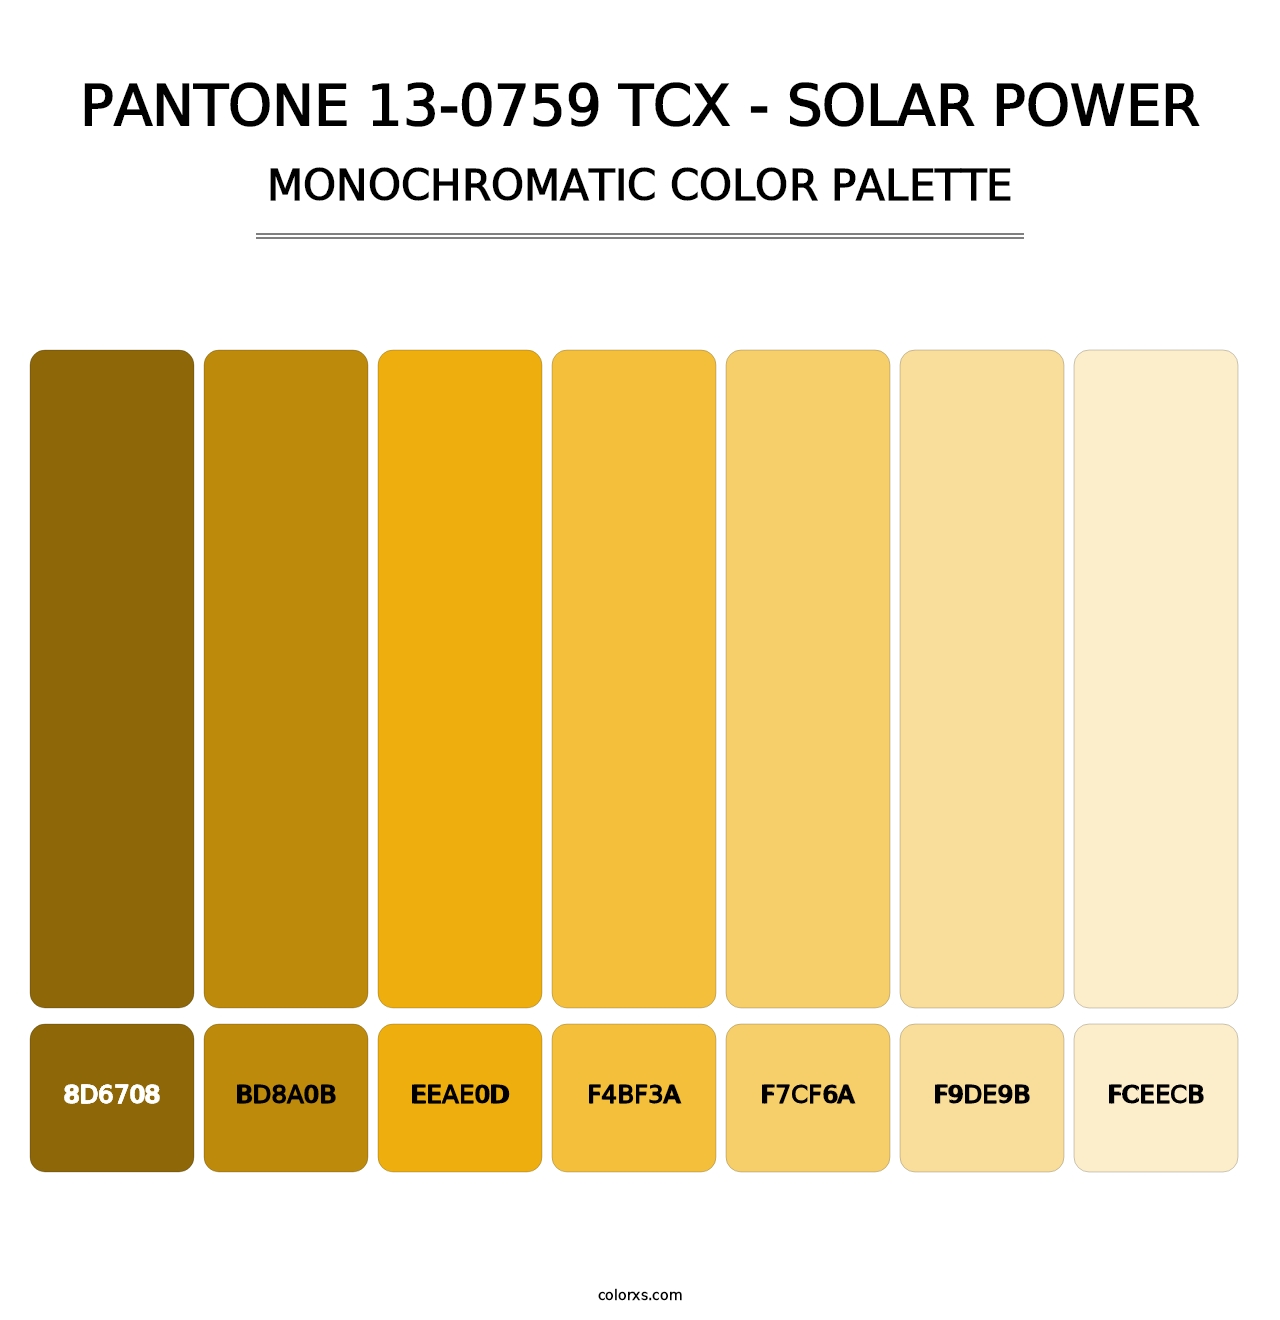 PANTONE 13-0759 TCX - Solar Power - Monochromatic Color Palette